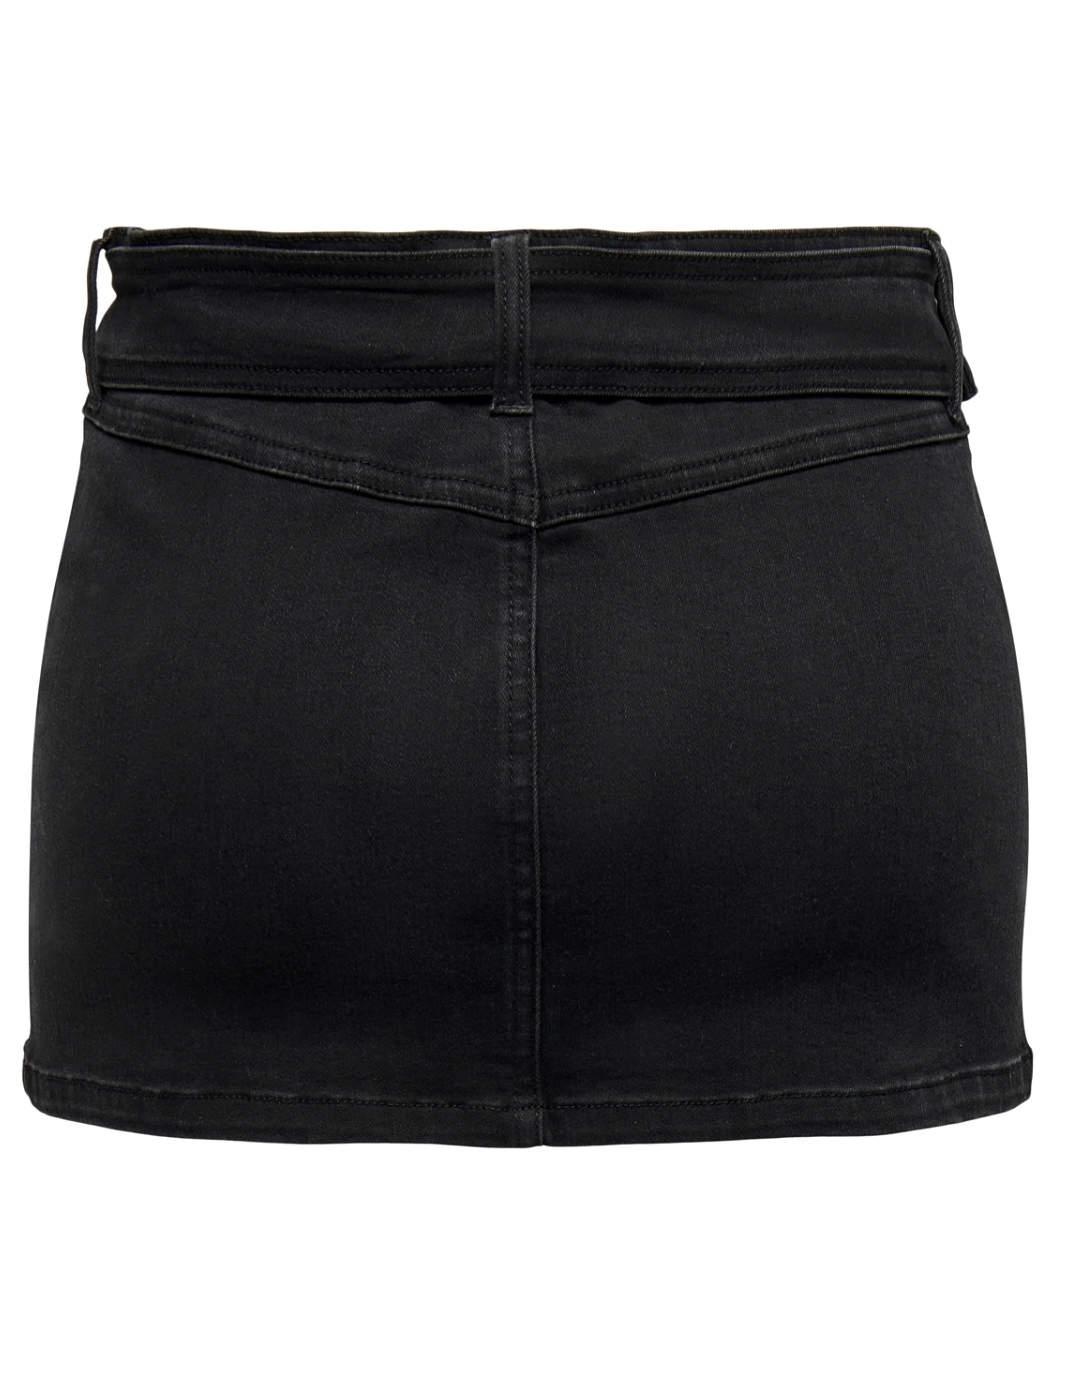 Minifalda Only Nicki denim lavado negro con cinturón mujer